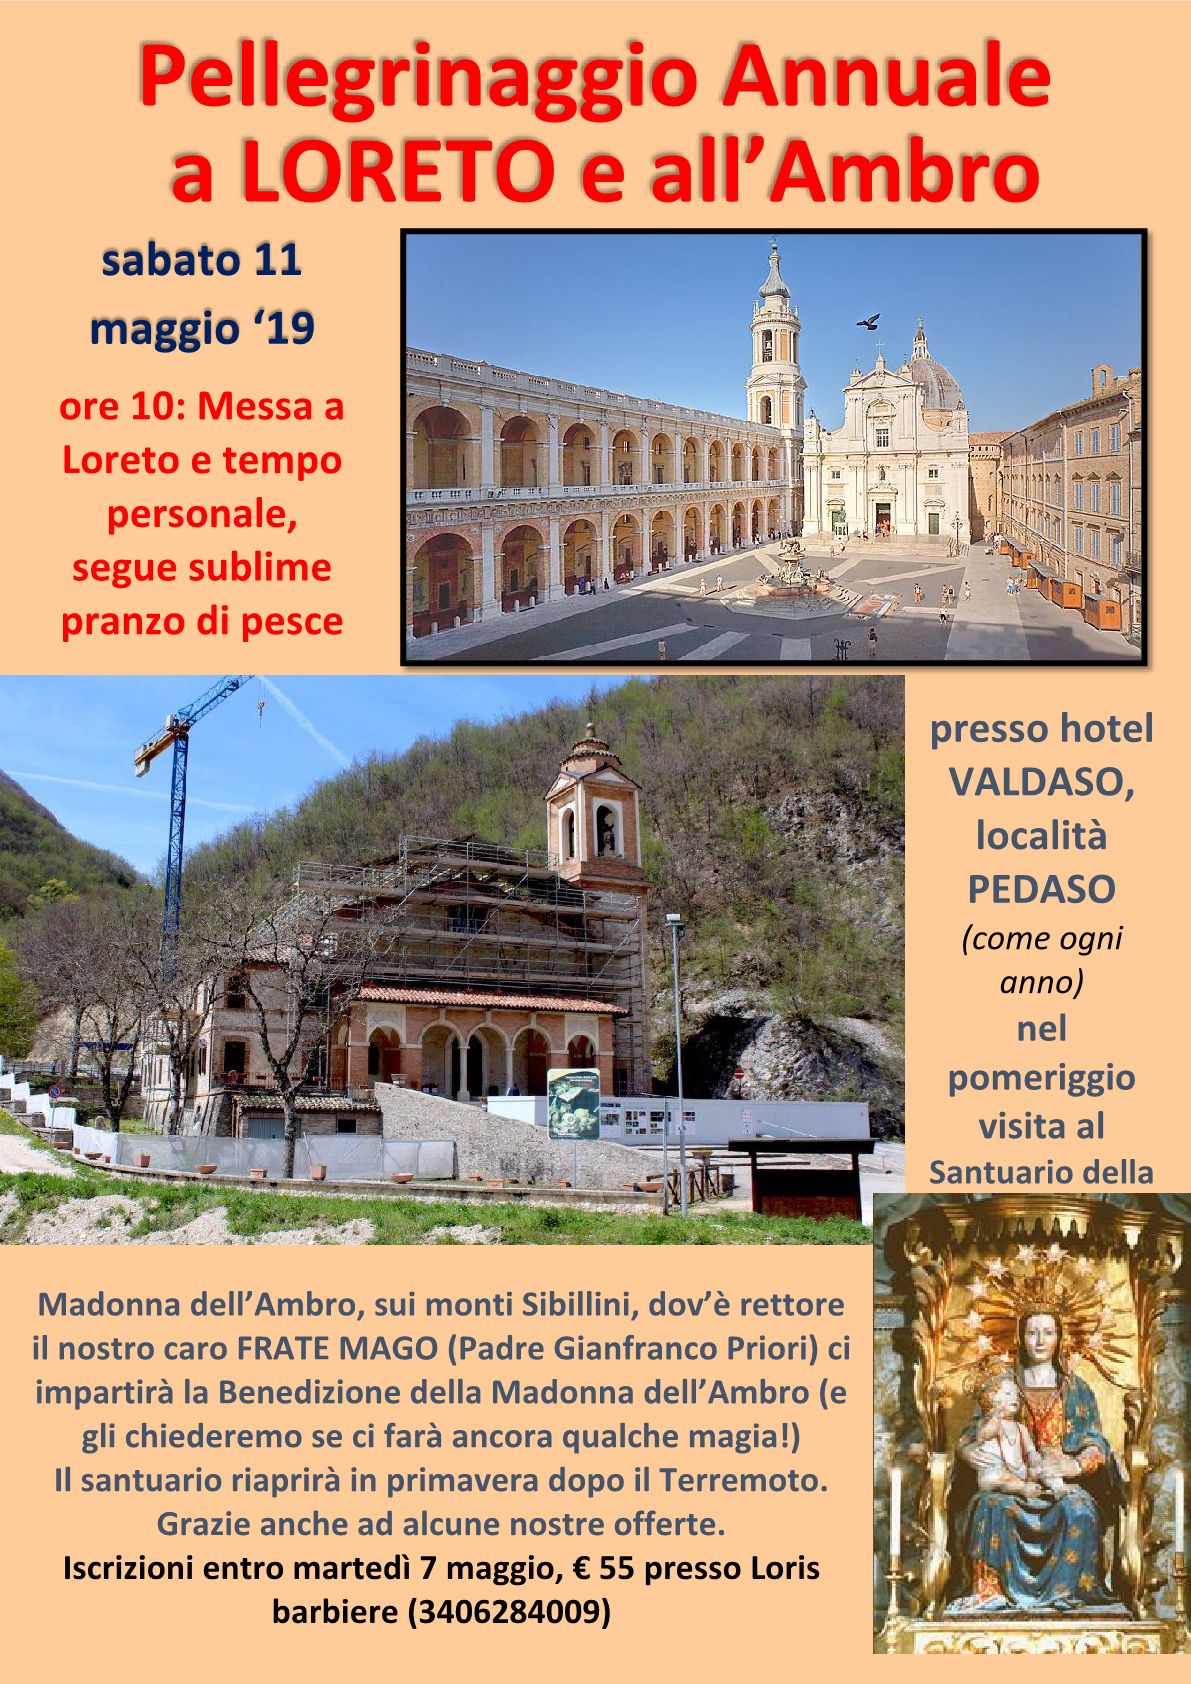 11/05/2019 - Pellegrinaggio a Loreto e all'Ambro